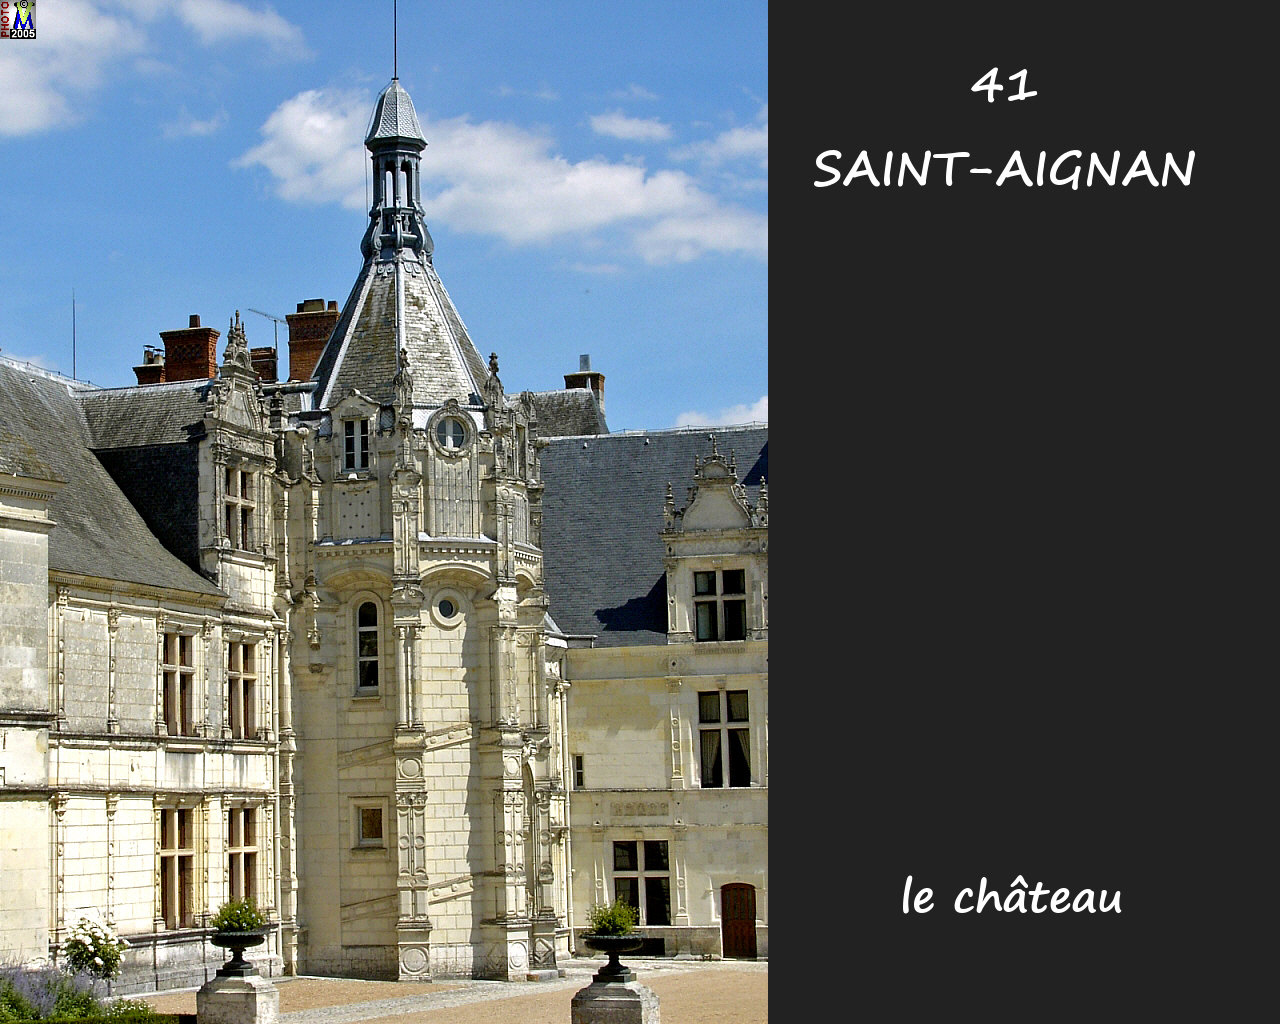 41STAIGNAN_chateau_114.jpg